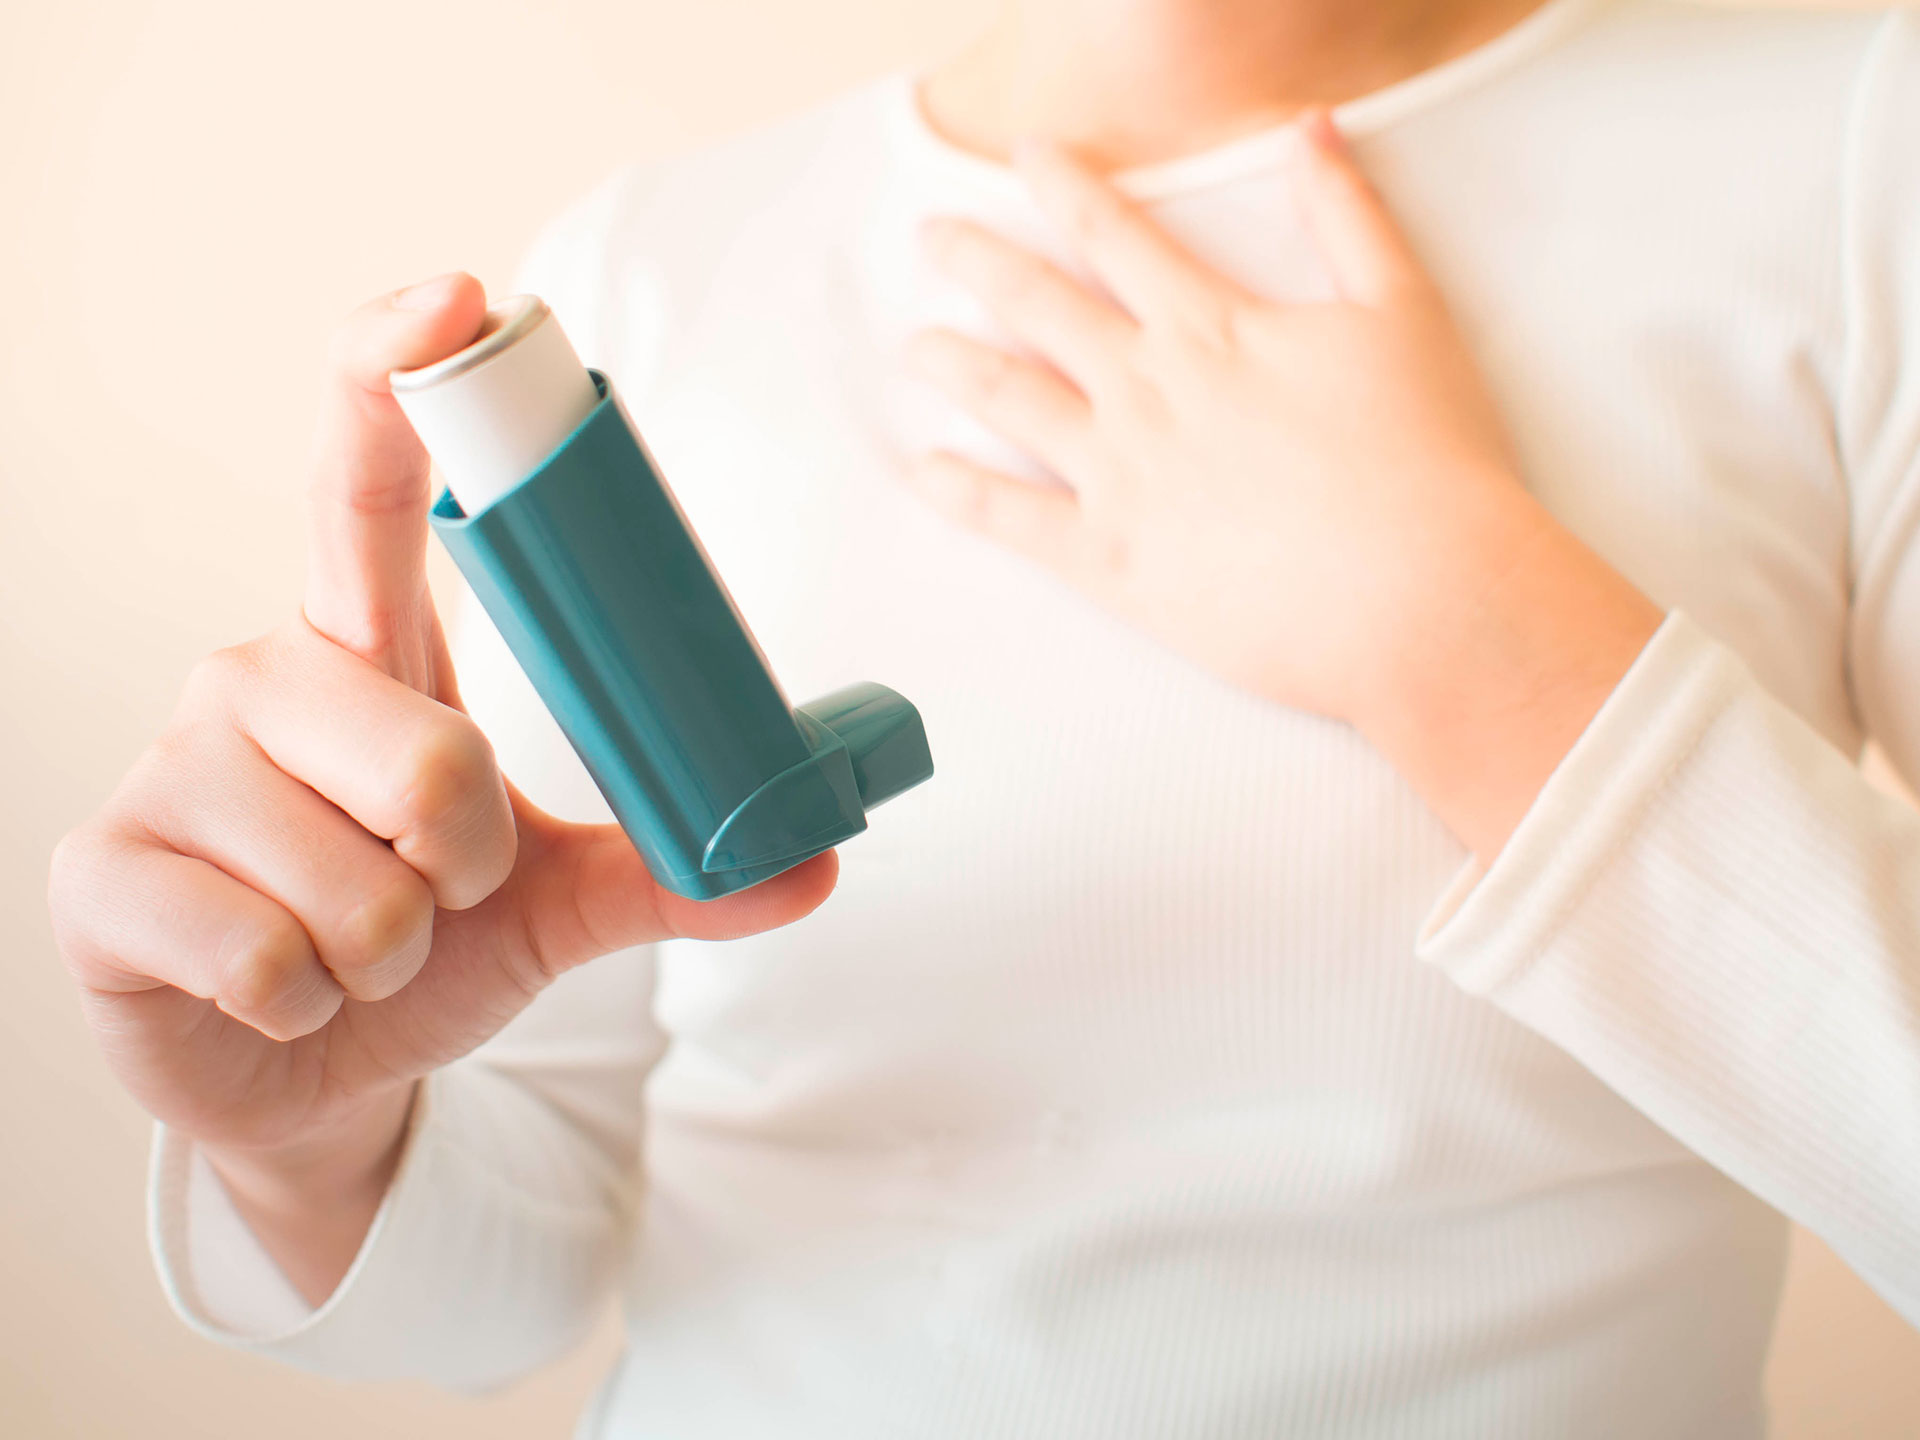 Niños con infecciones respiratorias frecuentes: cómo cuidarlos para protegerlos del COVID-19